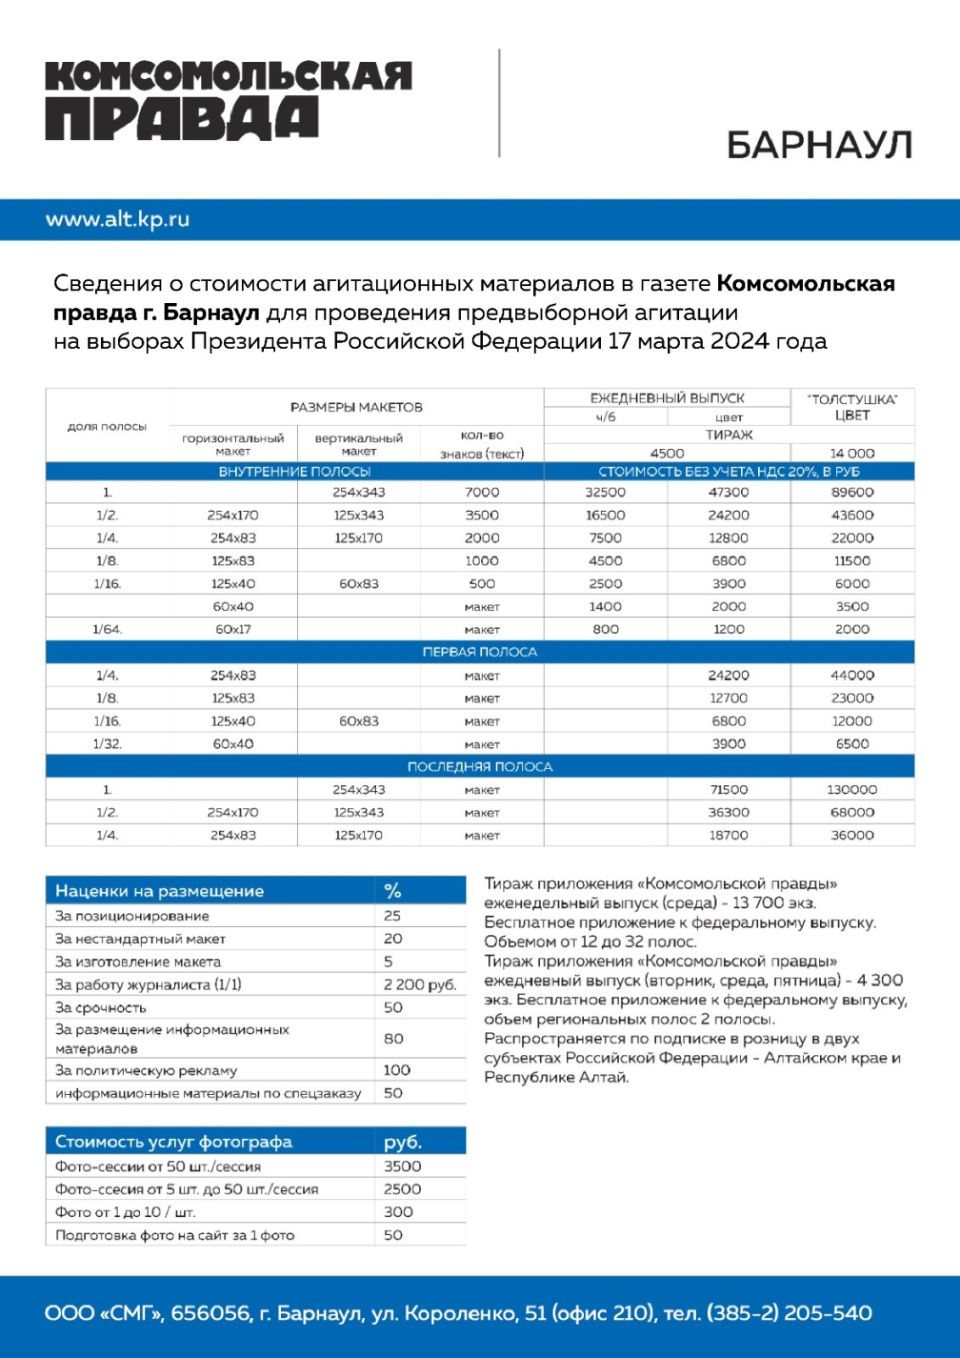 Сведения о стоимости агитационных материалов для проведения предвыборной агитации выборах Президента Российской Федерации 15 – 17 марта 2024 года